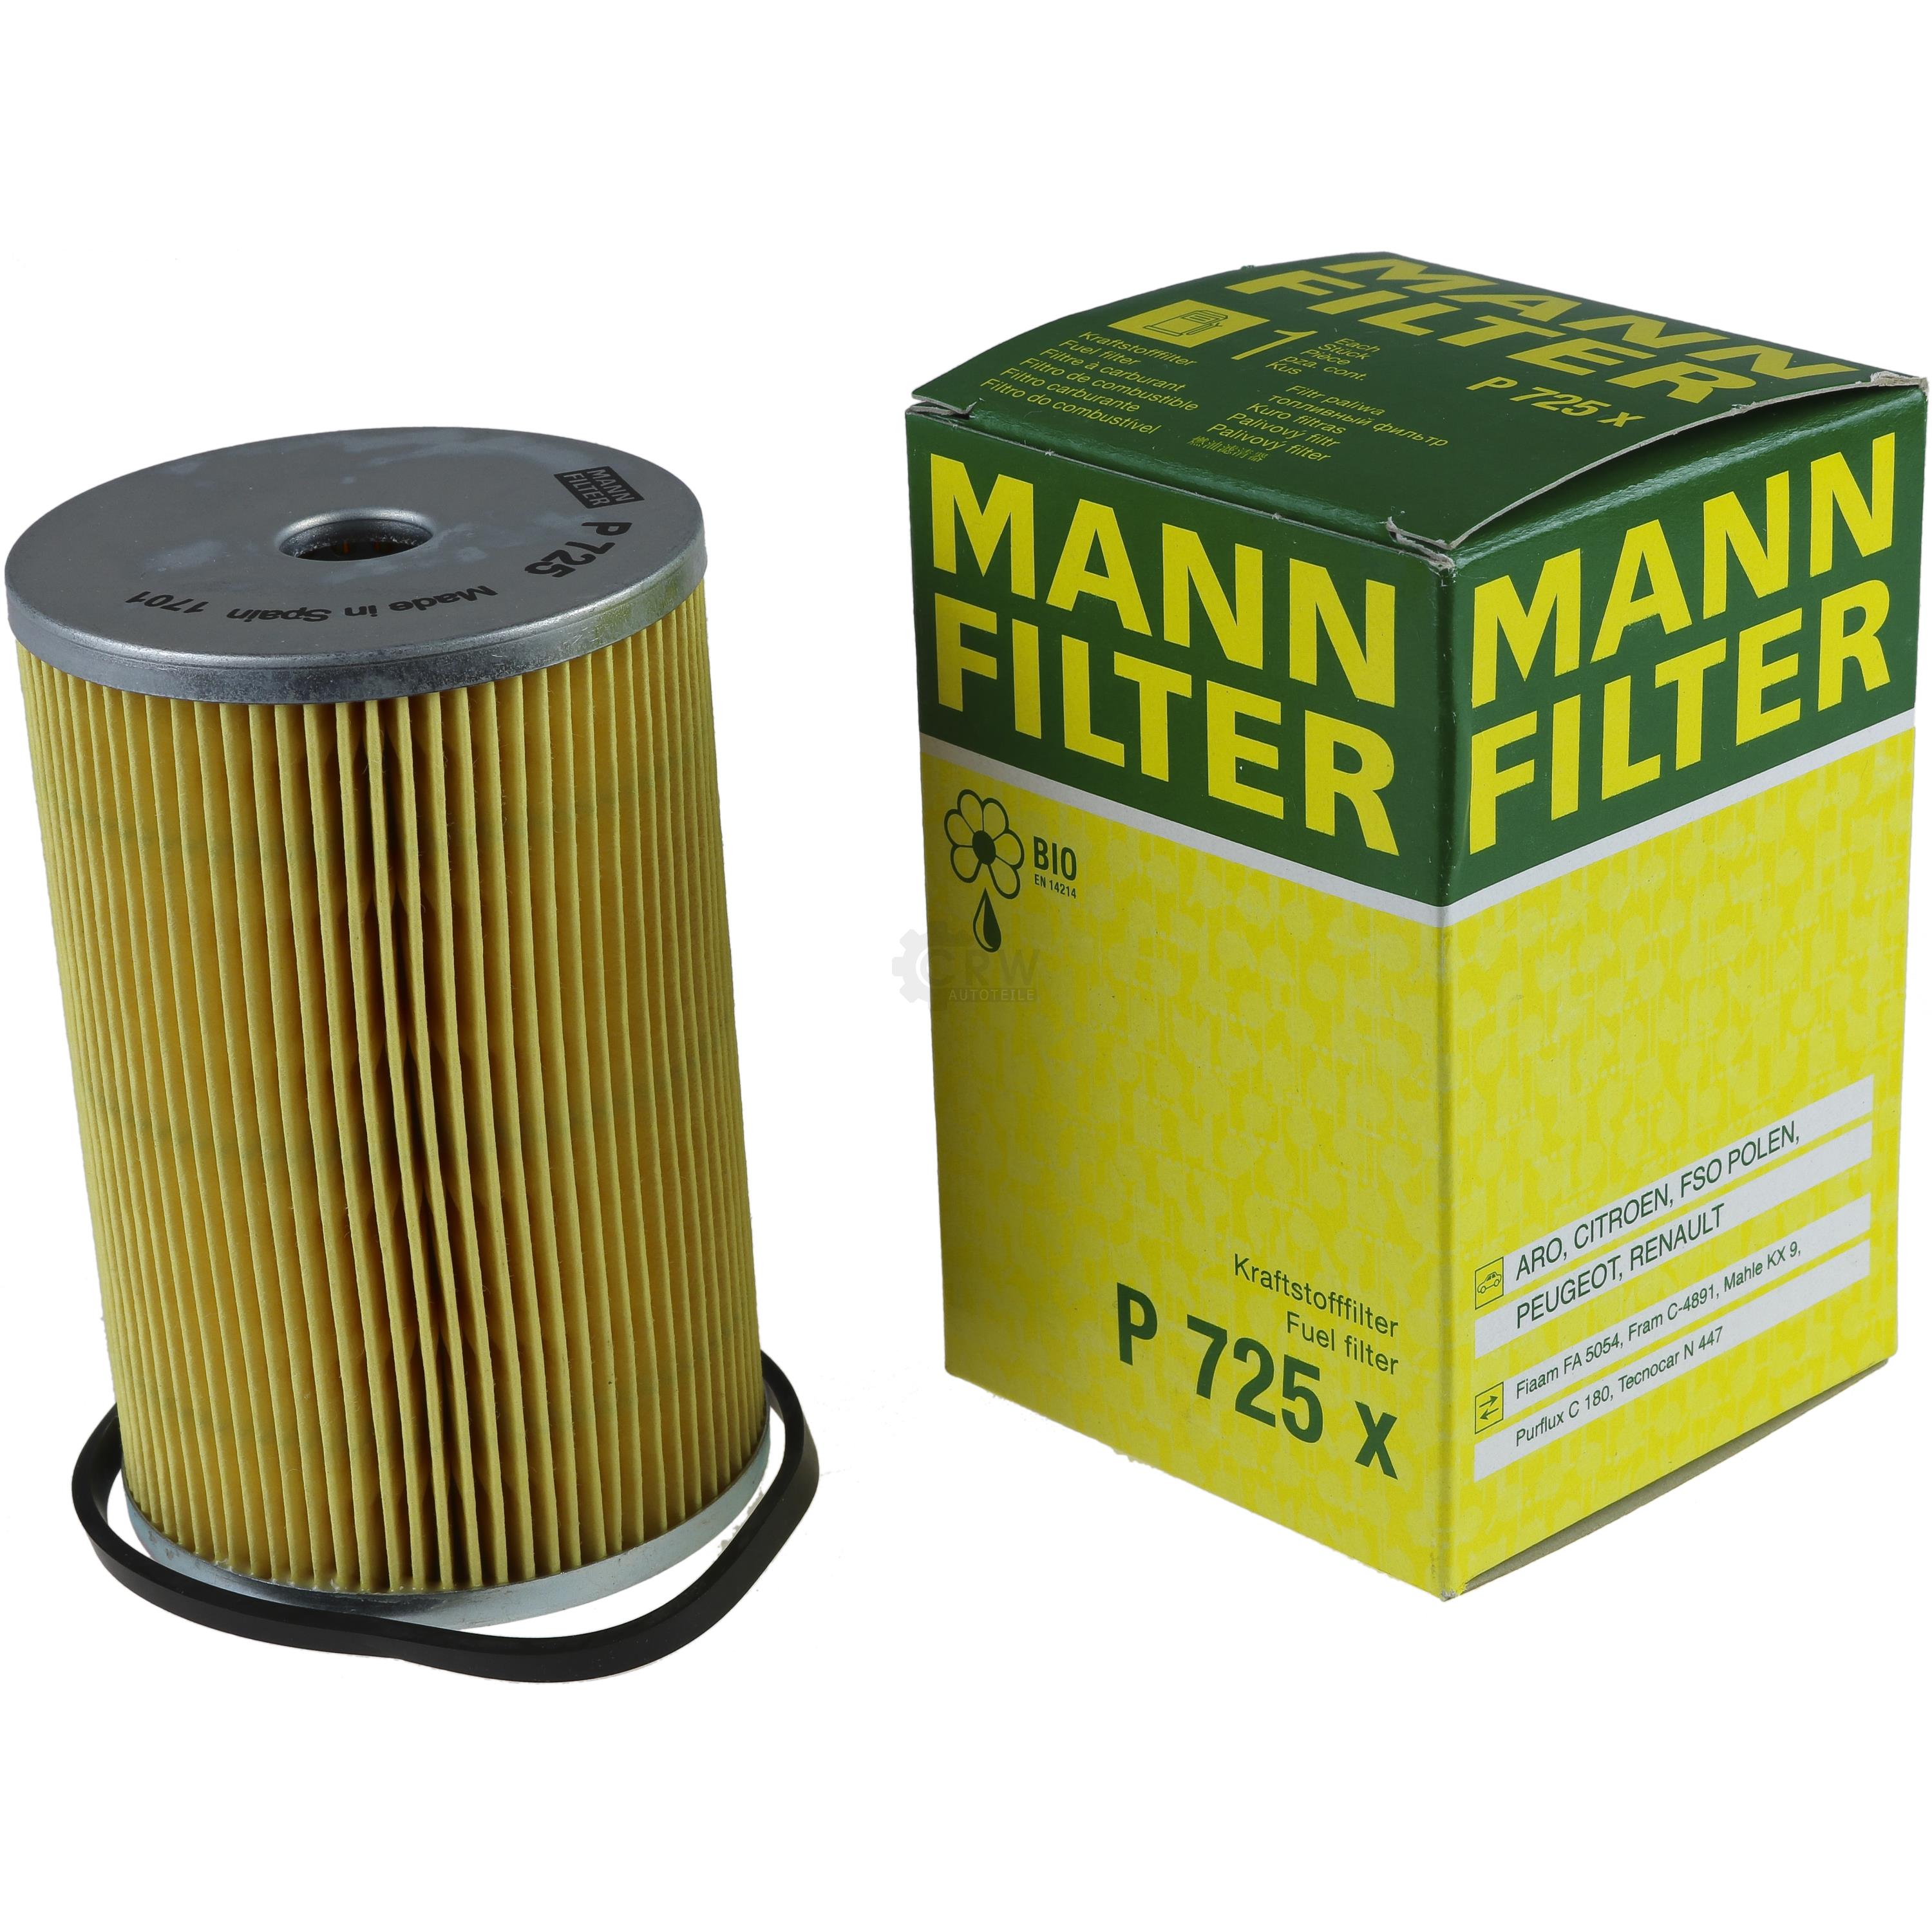 MANN-FILTER Kraftstofffilter P 725 x Fuel Filter